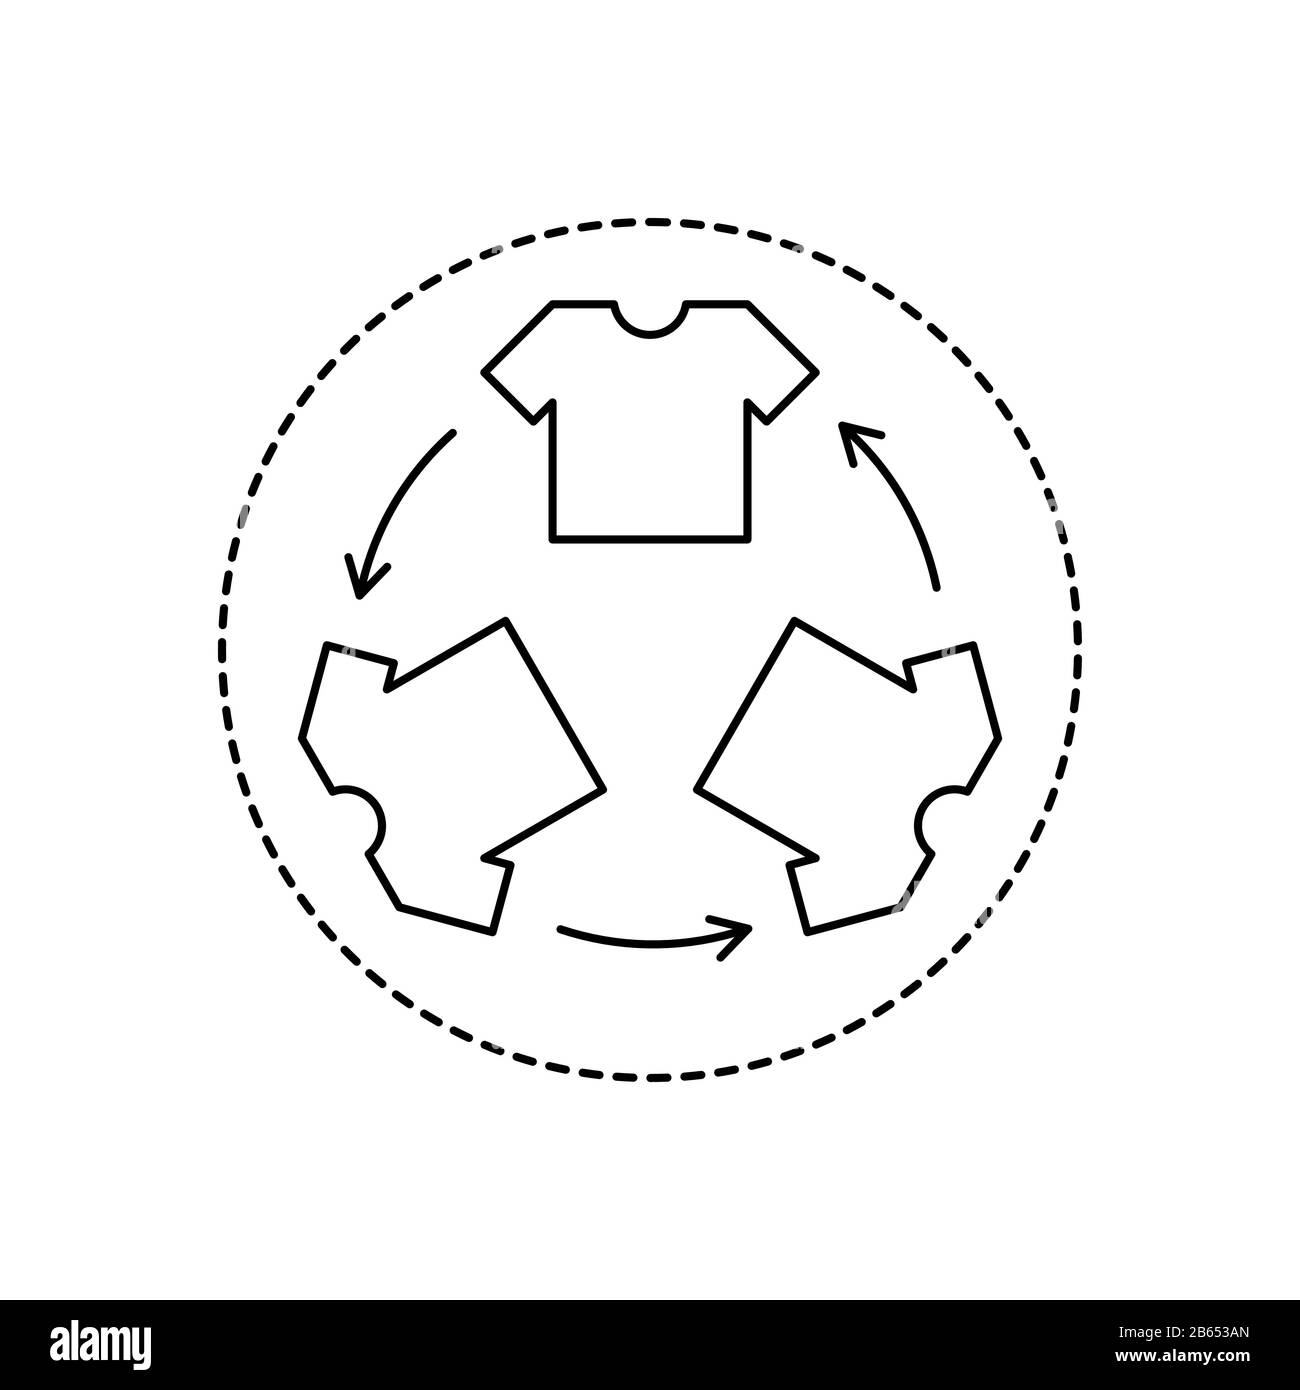 Recycling-Schild für Kleidung im Kreis. T-Shirt Umriss mit Recycling-Pfeilen. Symbol für die Recycling-Kleidung. Ethischer Konsumerismus und umweltfreundliche Herstellung. Stock Vektor